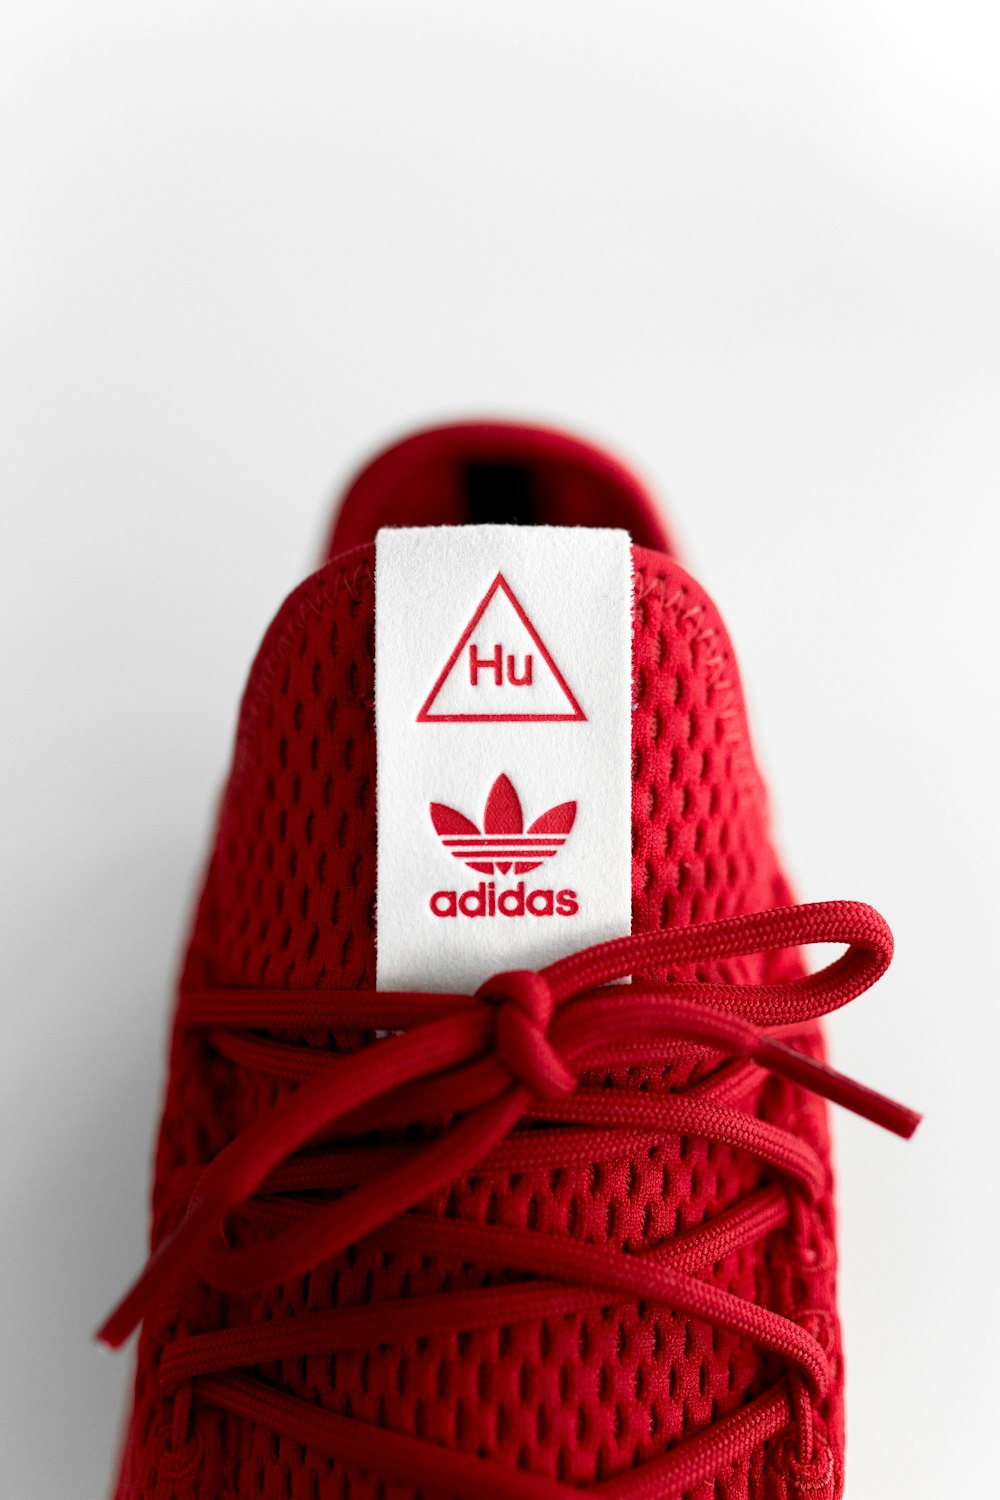 Foto zapatillas adidas rojas sin emparejar – Imagen Zapato gratis en  Unsplash